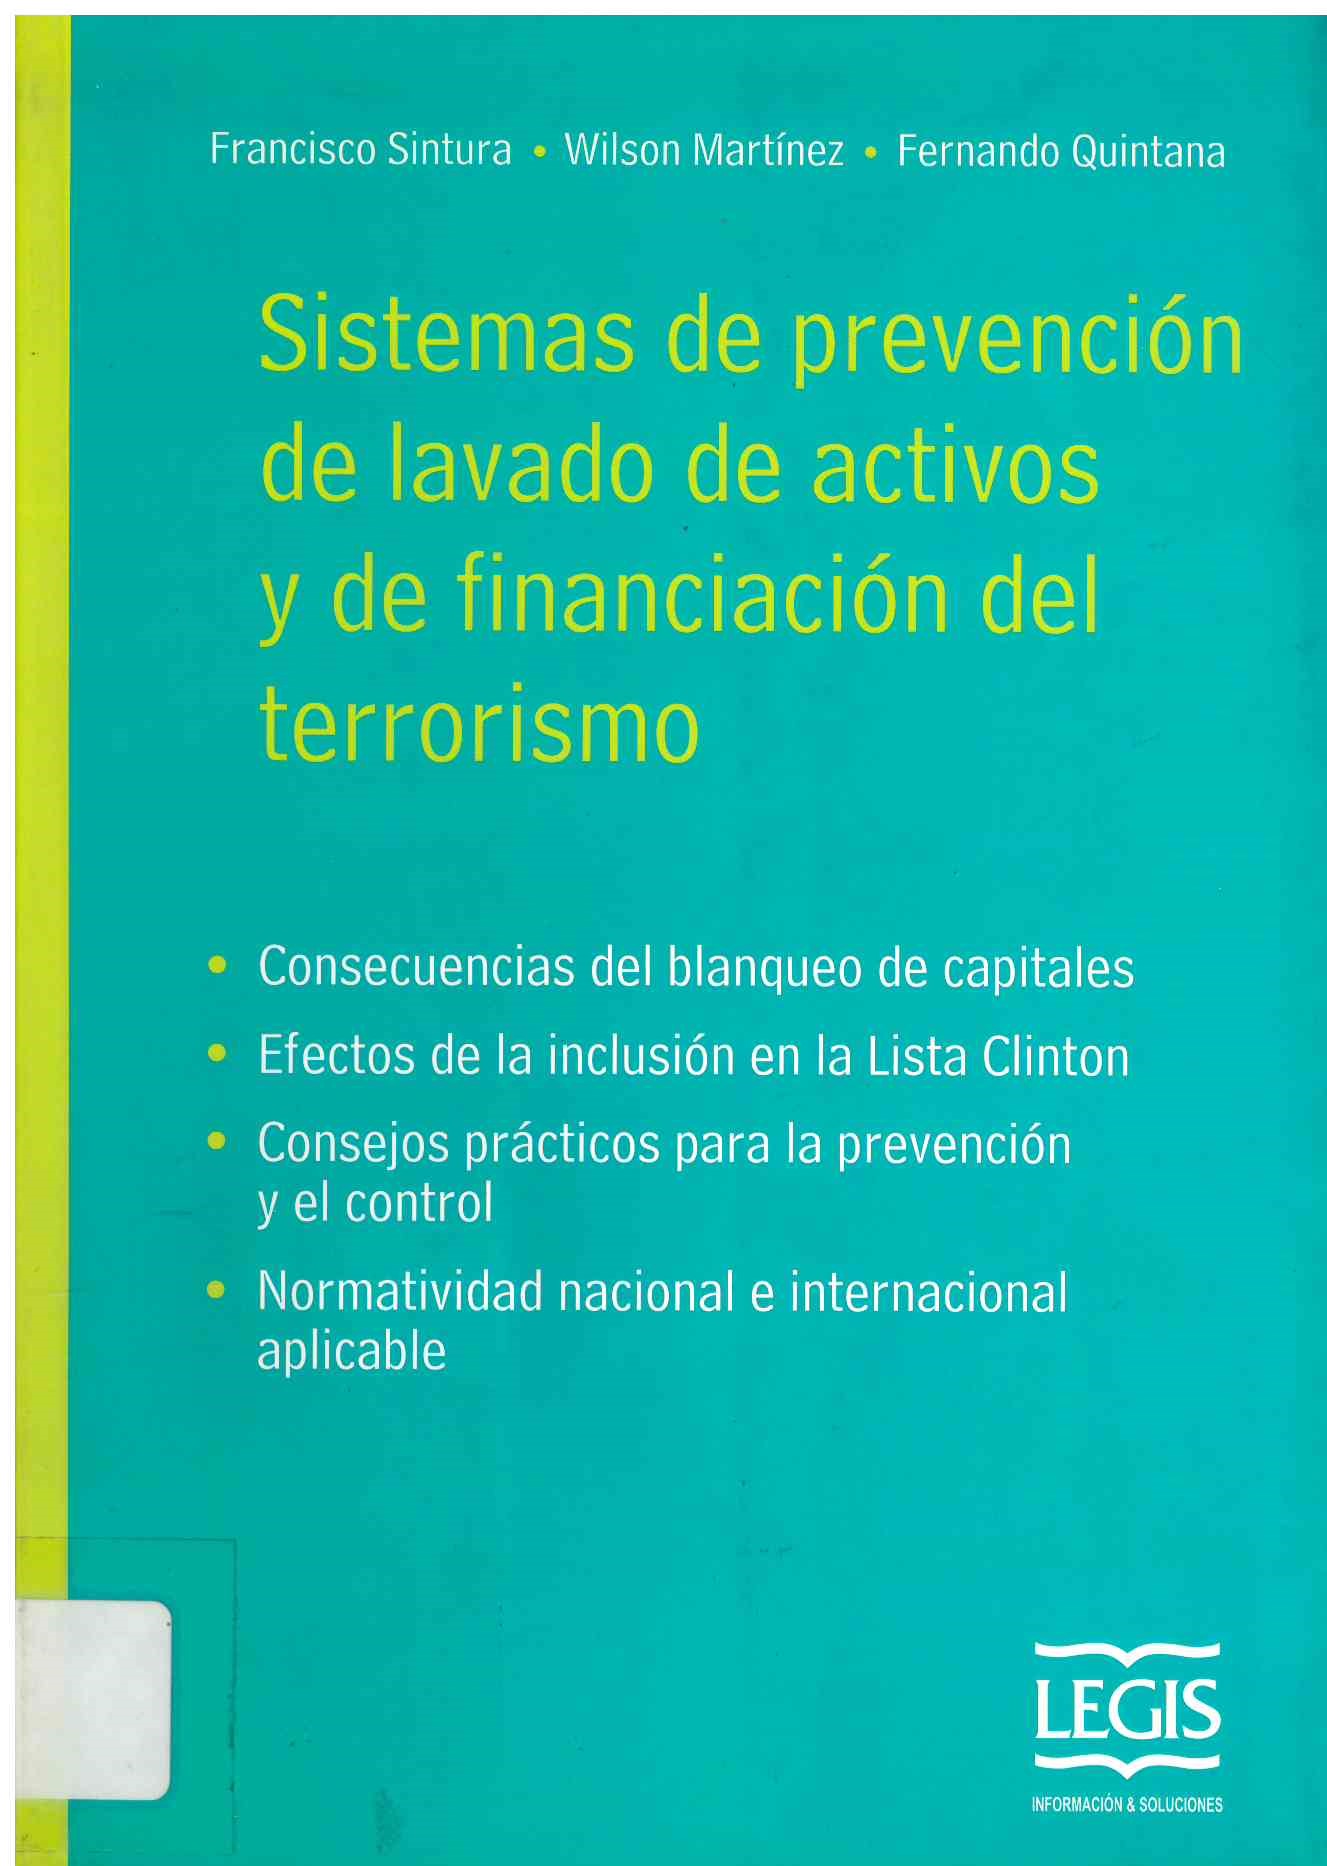 Sistemas de prevención de lavado de activos y de financiación del terrorismo